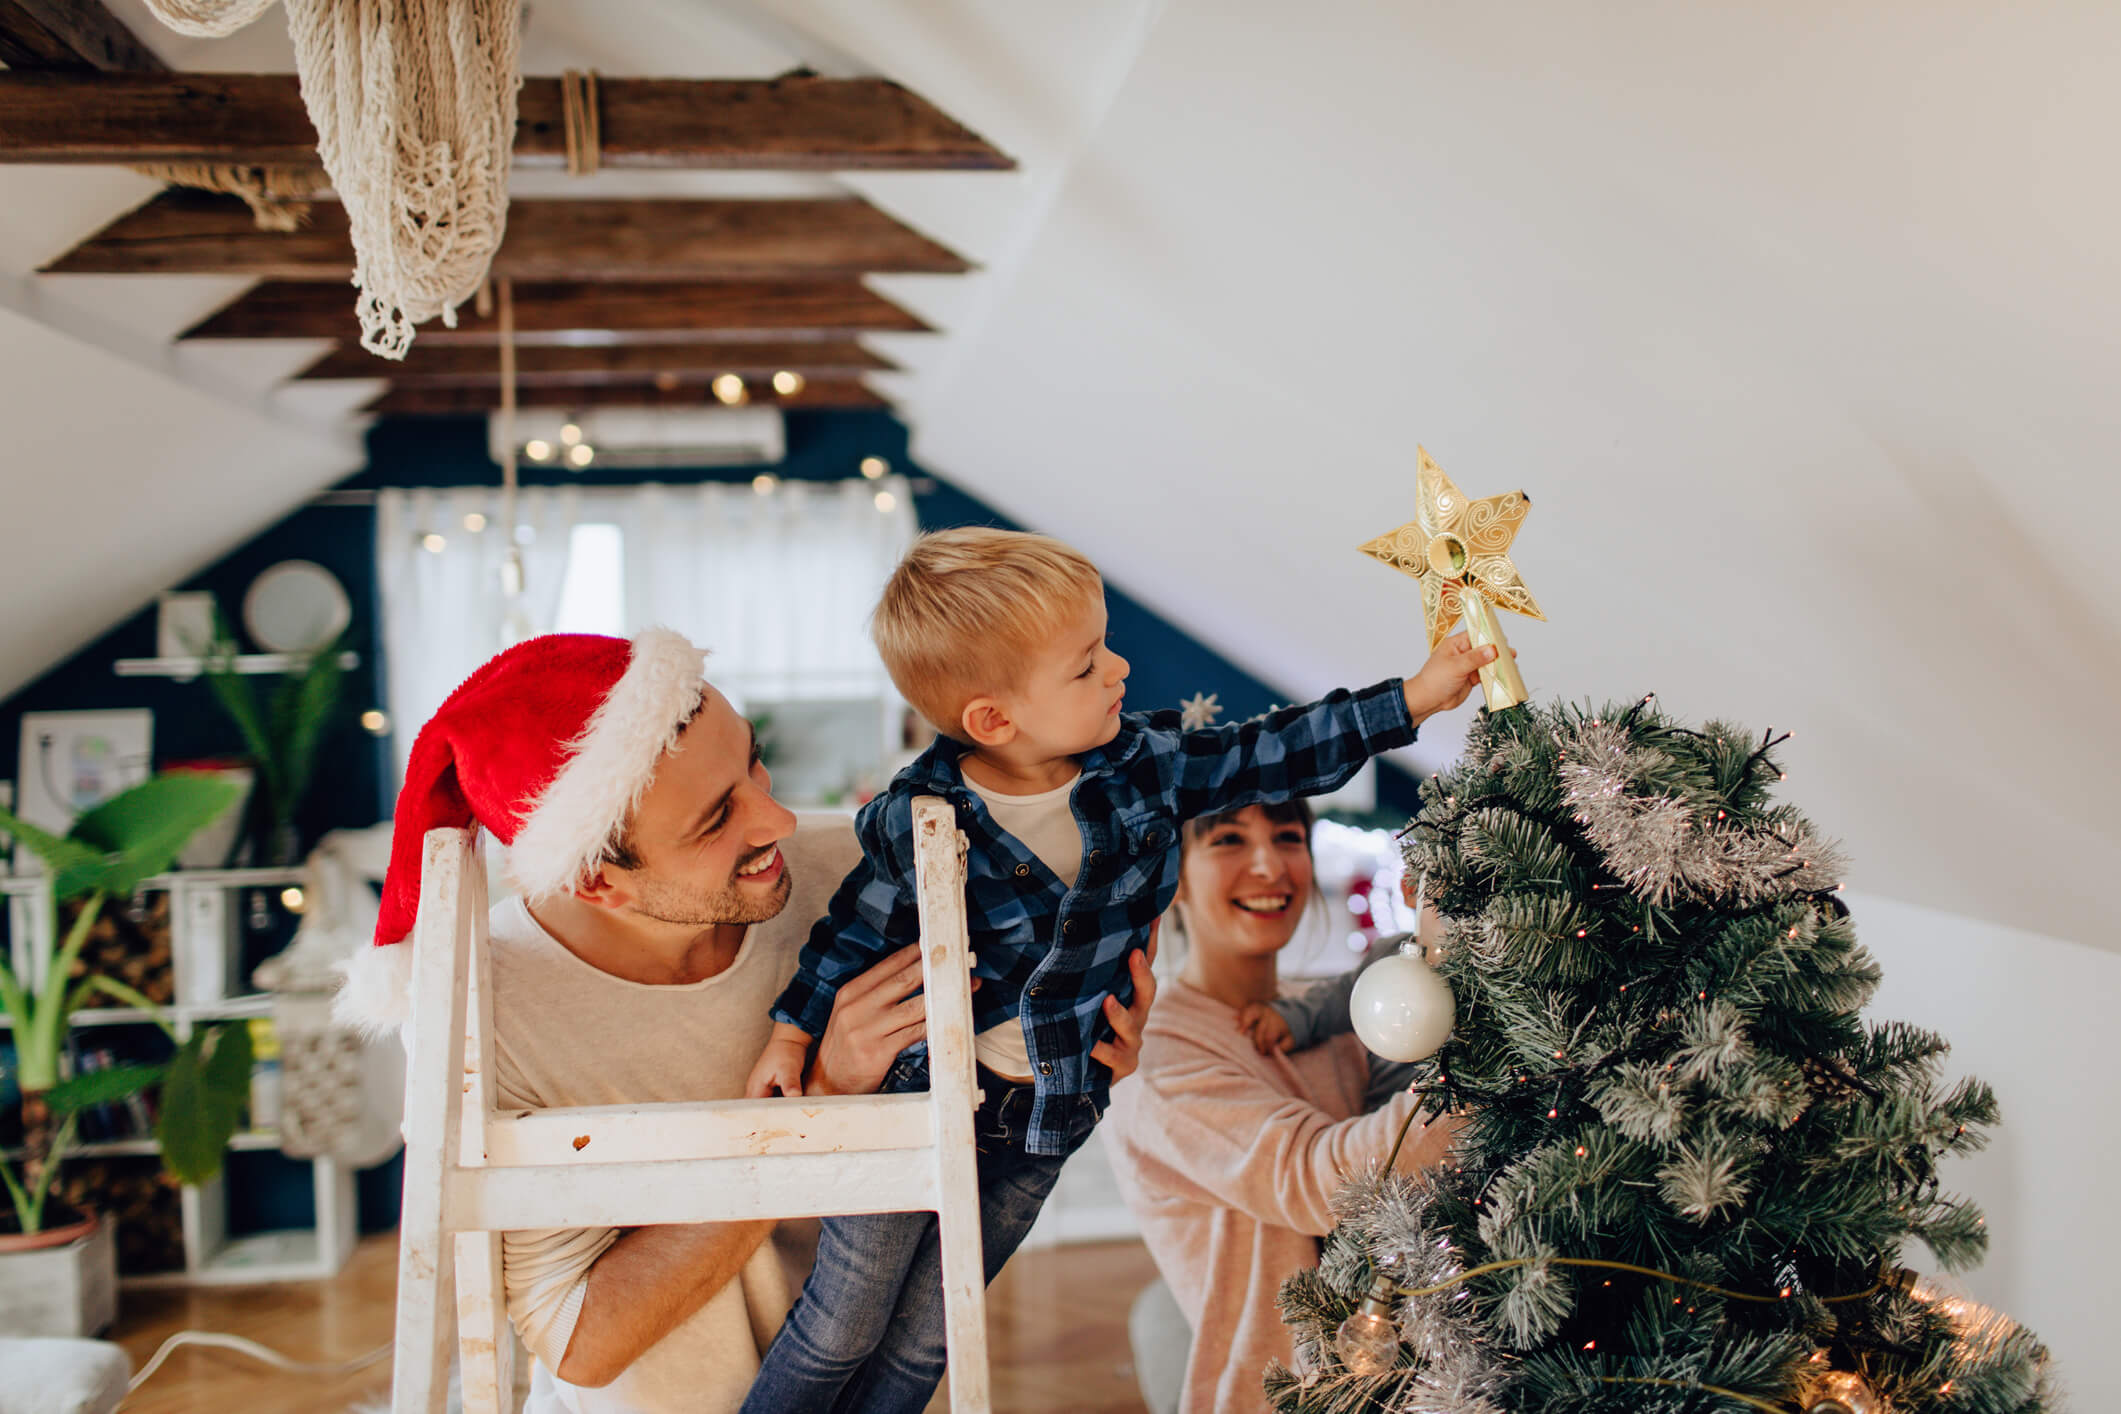 Decoração Natalina: Como Decorar A Casa Para O Natal Em 7 Dicas!